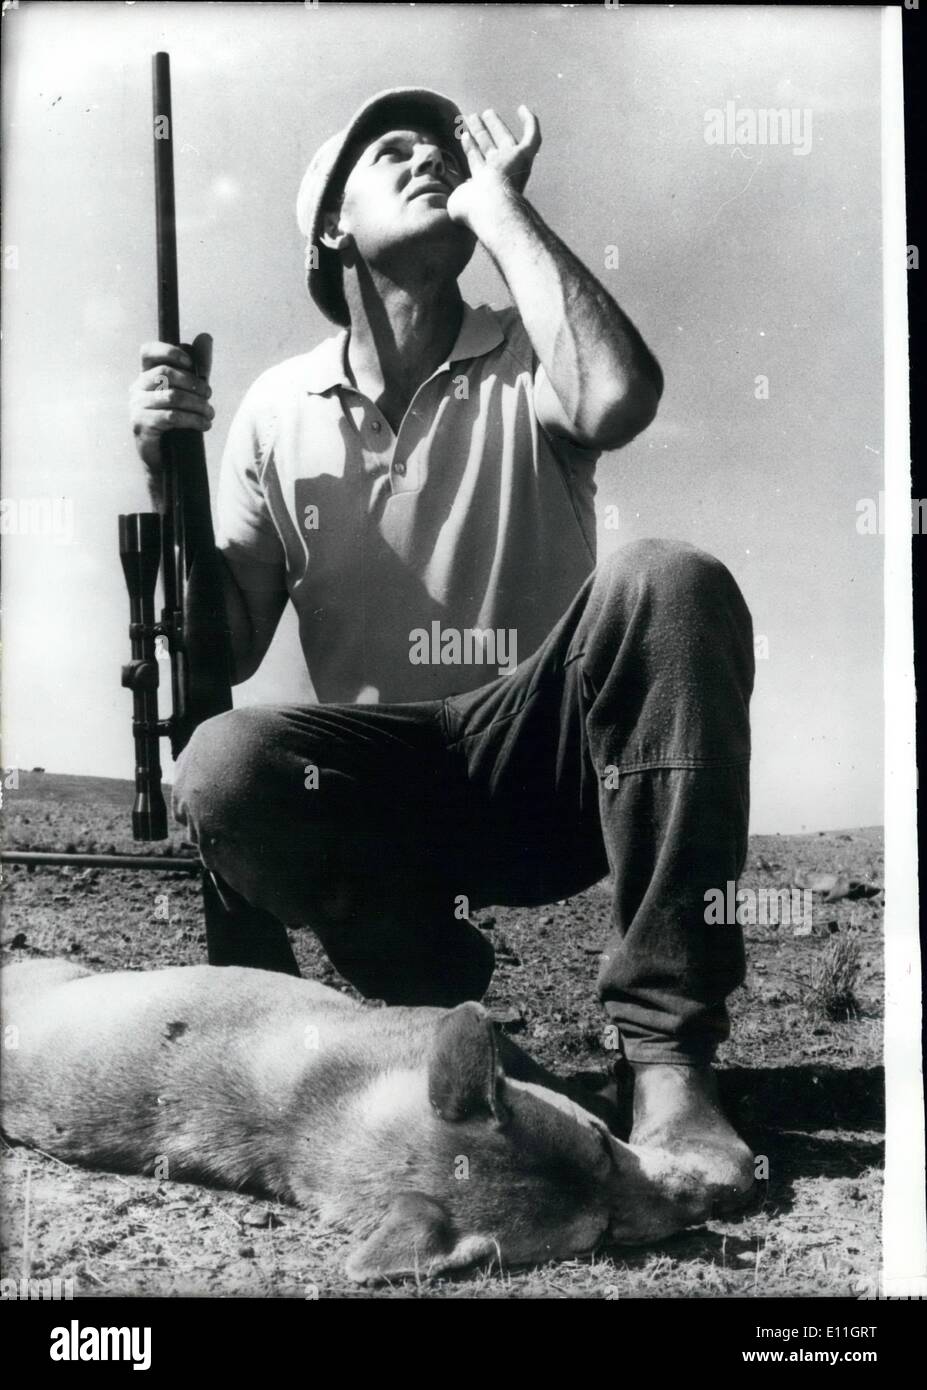 02 février 1978 - Décès de l'Carrieton Dingo : le dingo qui avait été qui ronge les agriculteurs d'Adélaïde, l'Australie a finalement été tué. Le dingo qui avait tué plus de 1 000 moutons en 12 mois, a été abattu par les écologistes de manières, ils devraient venir ici et regarder un mouton écrit à l'agonie avec son estomac arrachés''. C'était une fin solennelle pour le chien qui avait déjoué les agriculteurs pendant presque une année. Dans Carrieton Polden, près de la propriété, il y avait tout autour de l'agriculture lorsque les acclamations de fraternité s'inspecter le tuer Banque D'Images